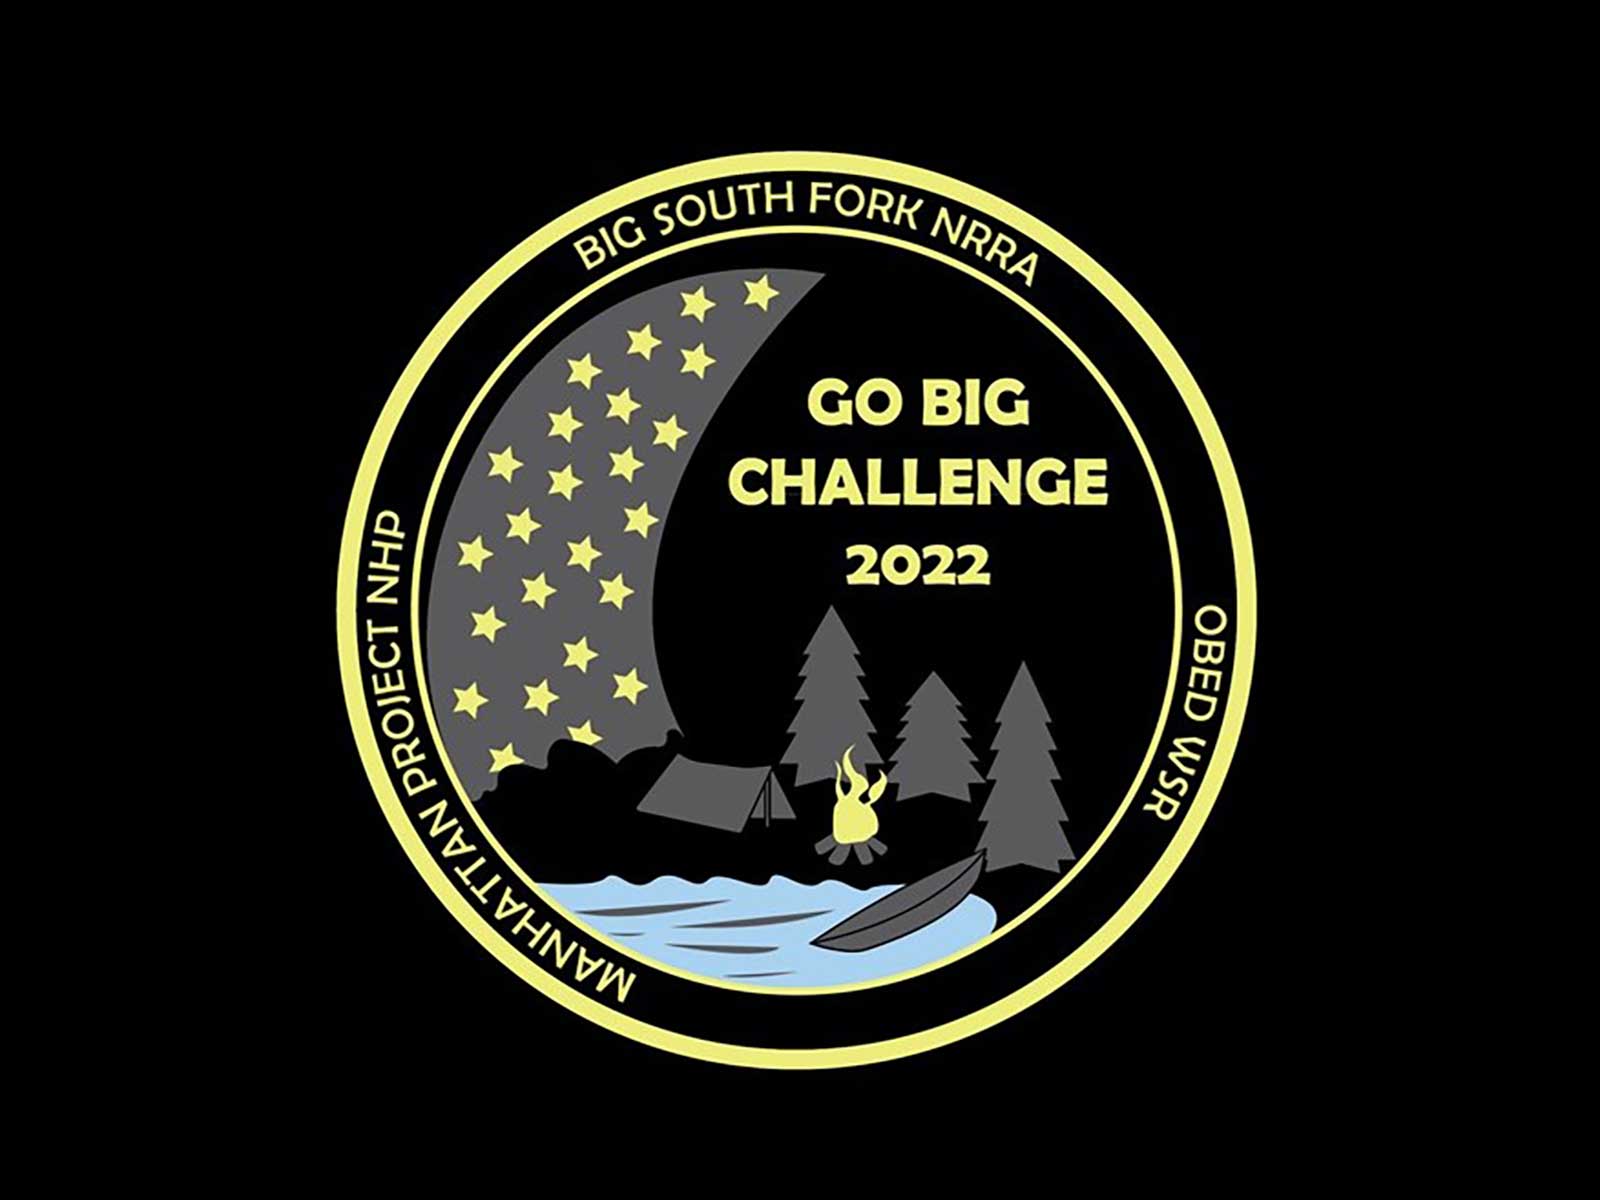 Big South Fork GO BIG Challenge Big South Fork National River